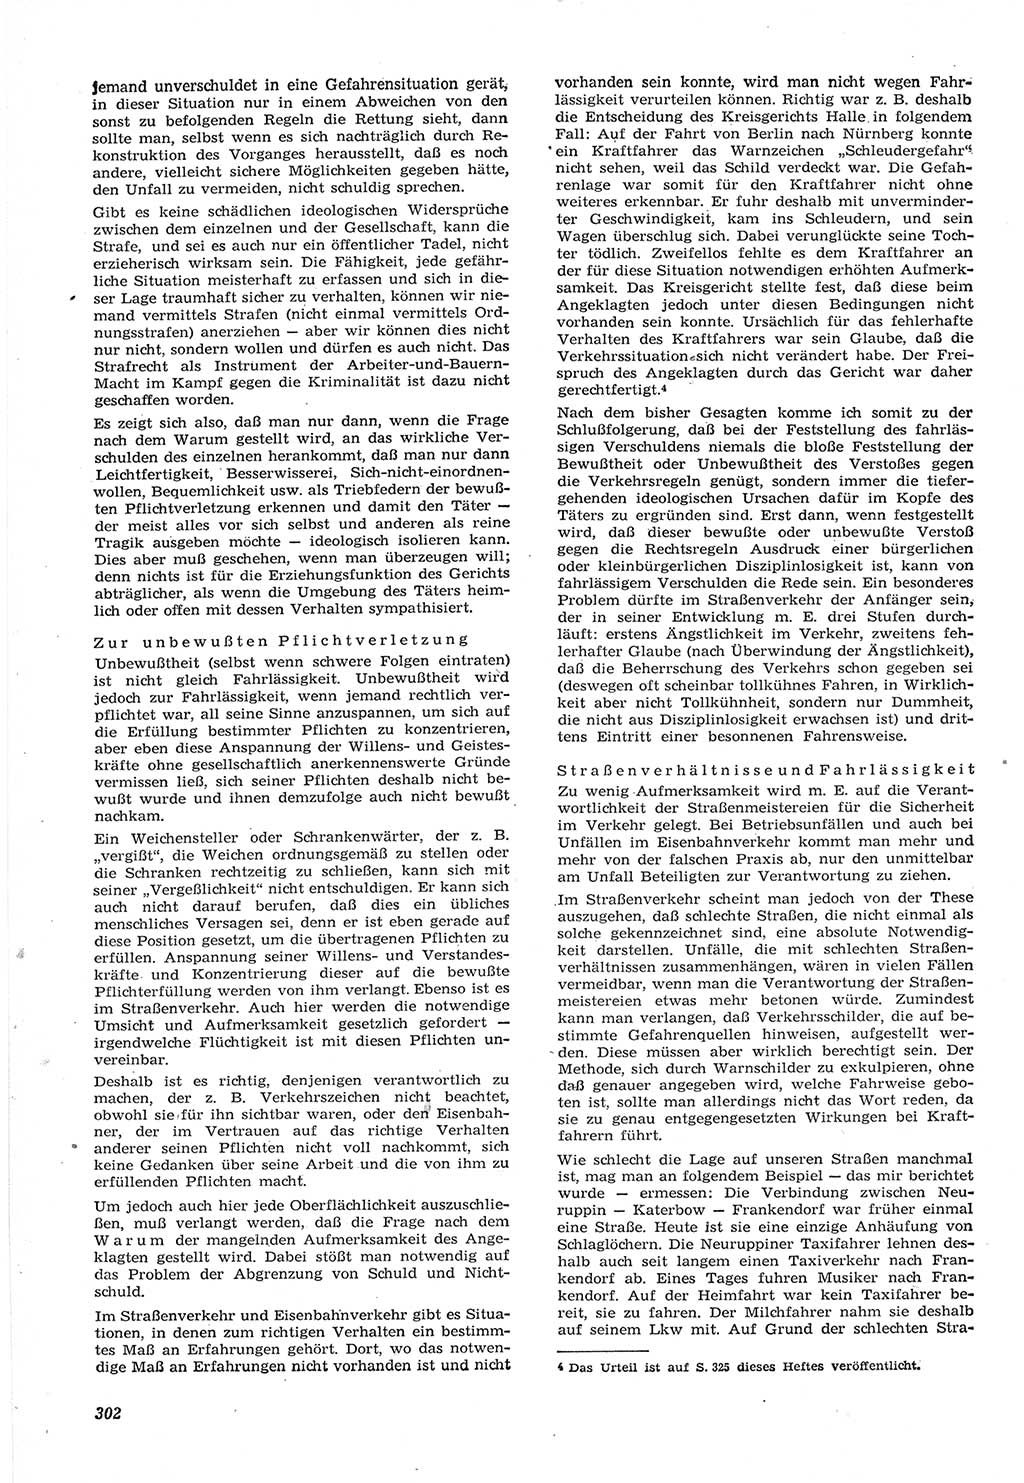 Neue Justiz (NJ), Zeitschrift für Recht und Rechtswissenschaft [Deutsche Demokratische Republik (DDR)], 15. Jahrgang 1961, Seite 302 (NJ DDR 1961, S. 302)